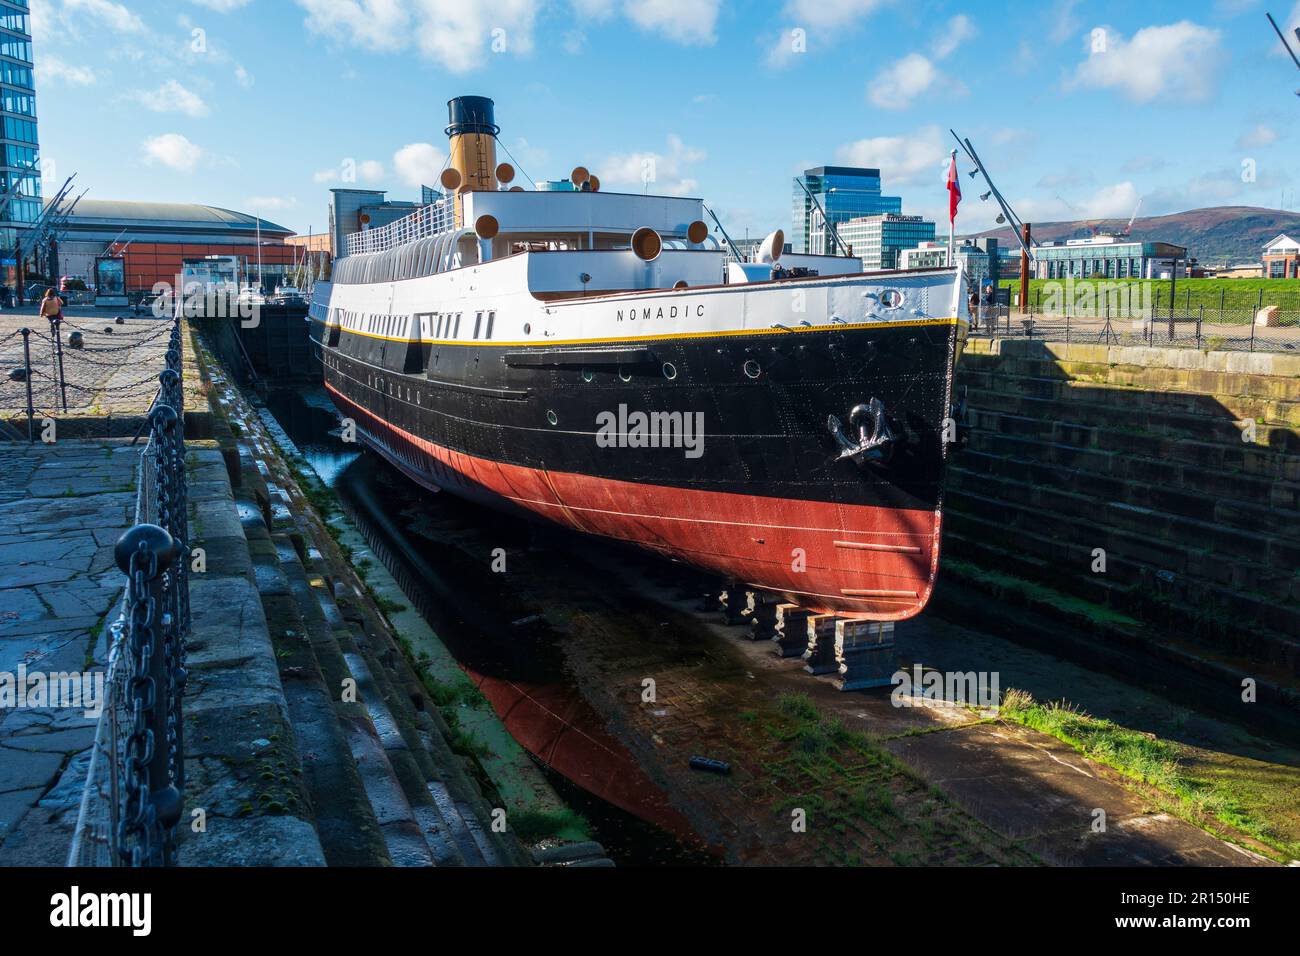 SS Nomadic, ein ehemaliges Ausschreibungsverfahren der 1911 ins Leben gerufenen White Star Line im historischen Hamilton Dock im Titanic Quarter, Belfast, Nordirland, Vereinigtes Königreich Stockfoto